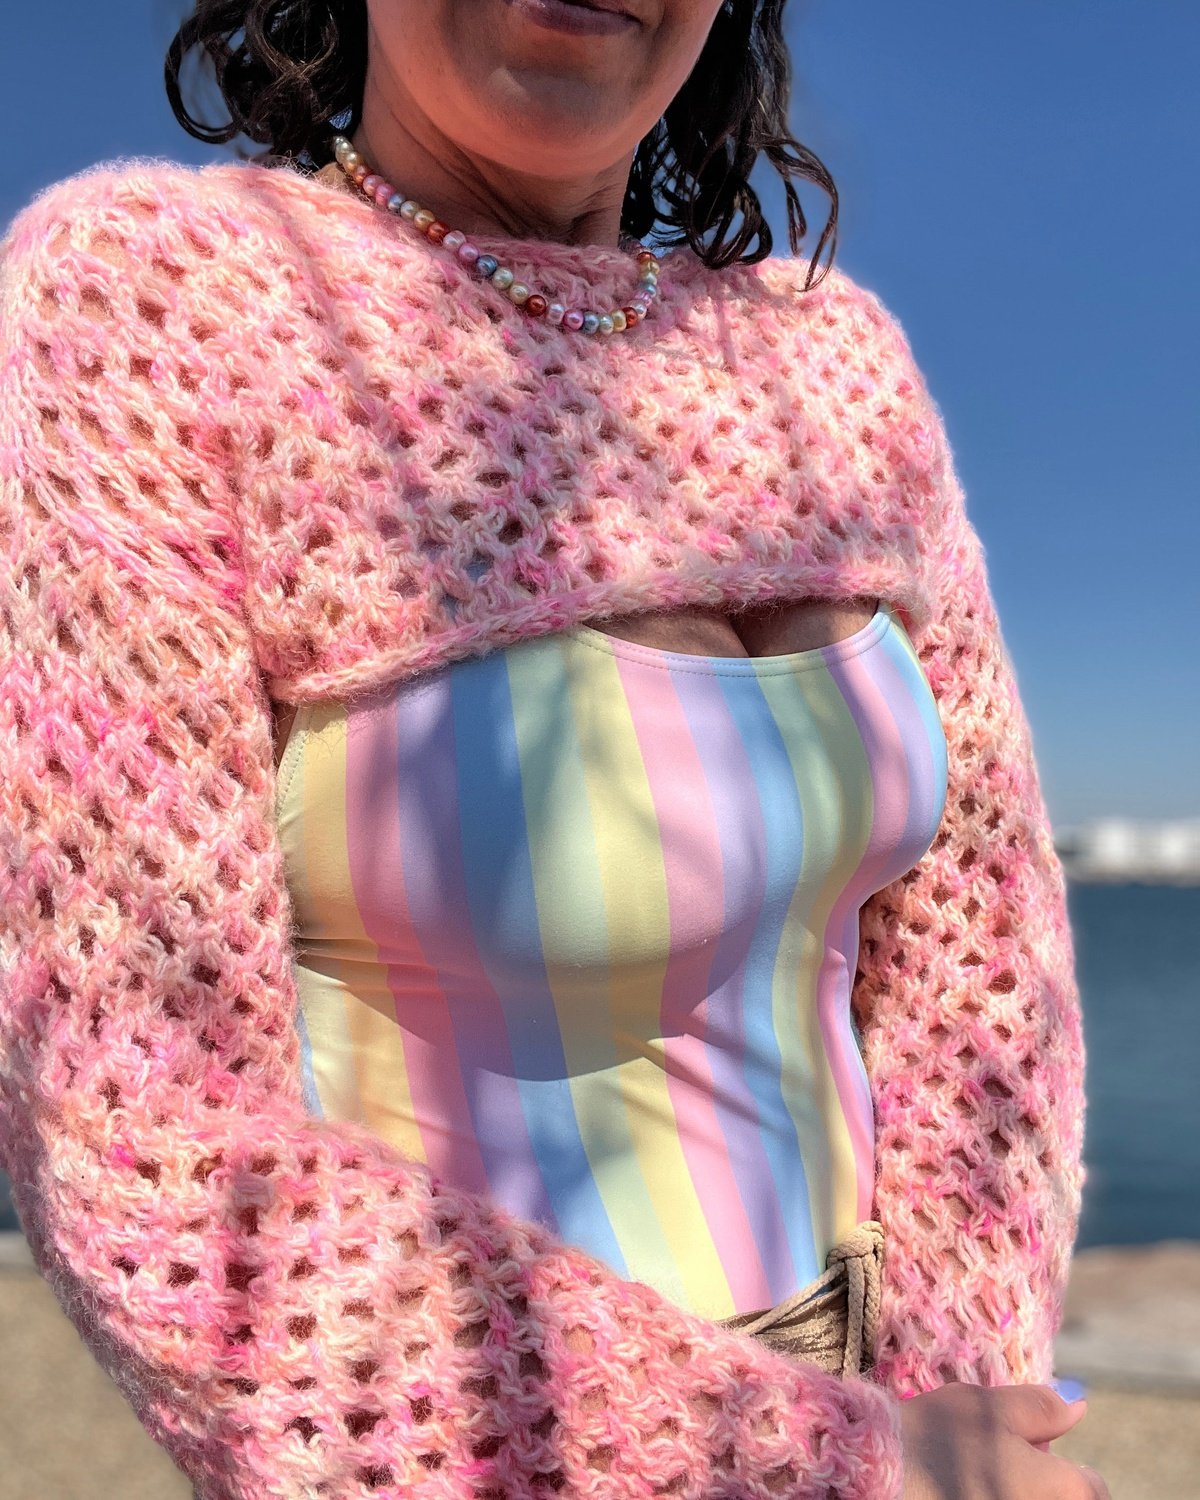 Kokomo Sleeves English Popknit knitting pattern